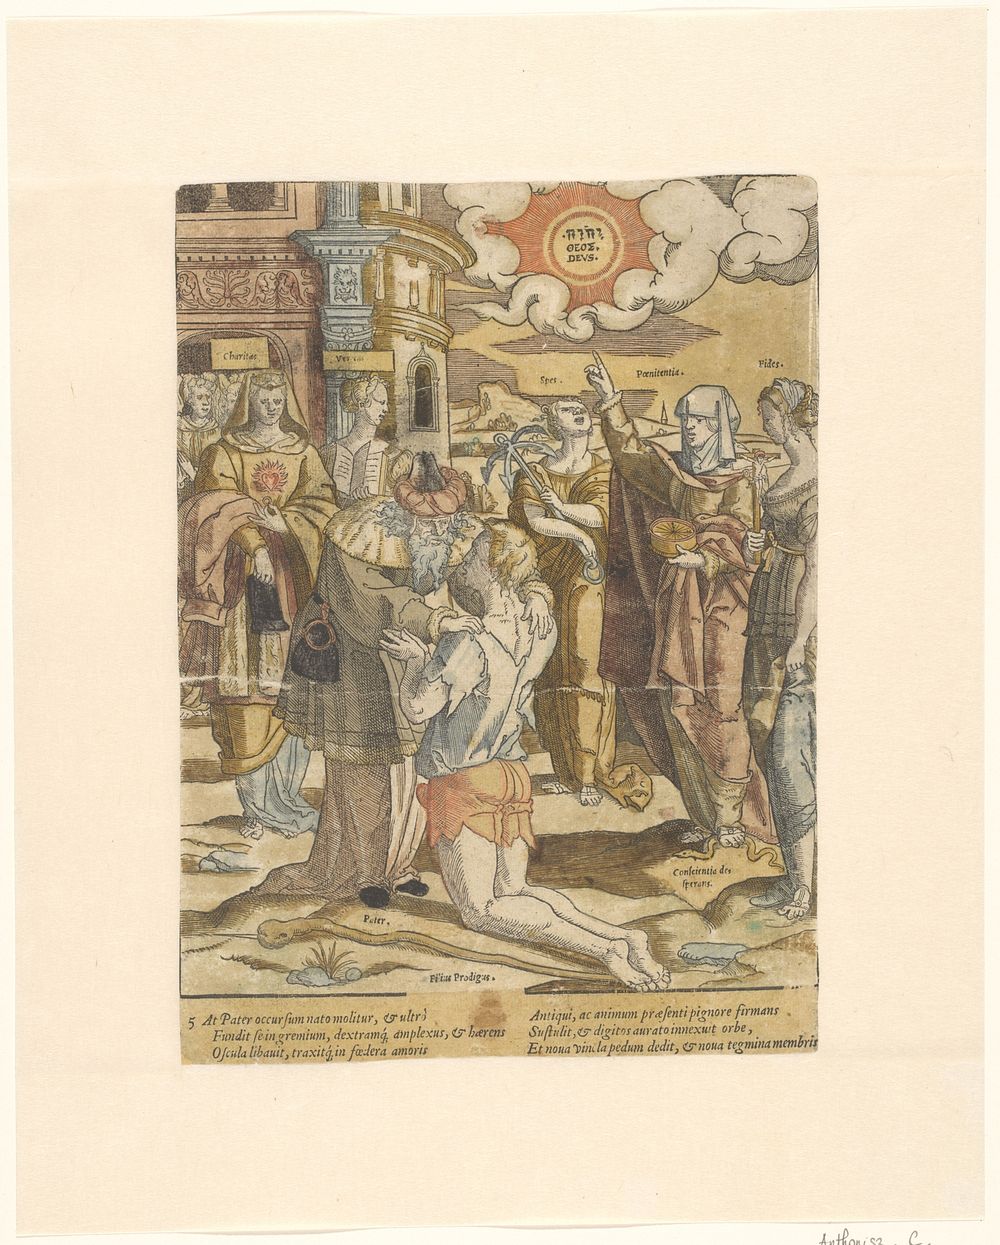 De terugkeer van de verloren zoon (c. 1540 - c. 1550) by Cornelis Anthonisz and Cornelis Anthonisz